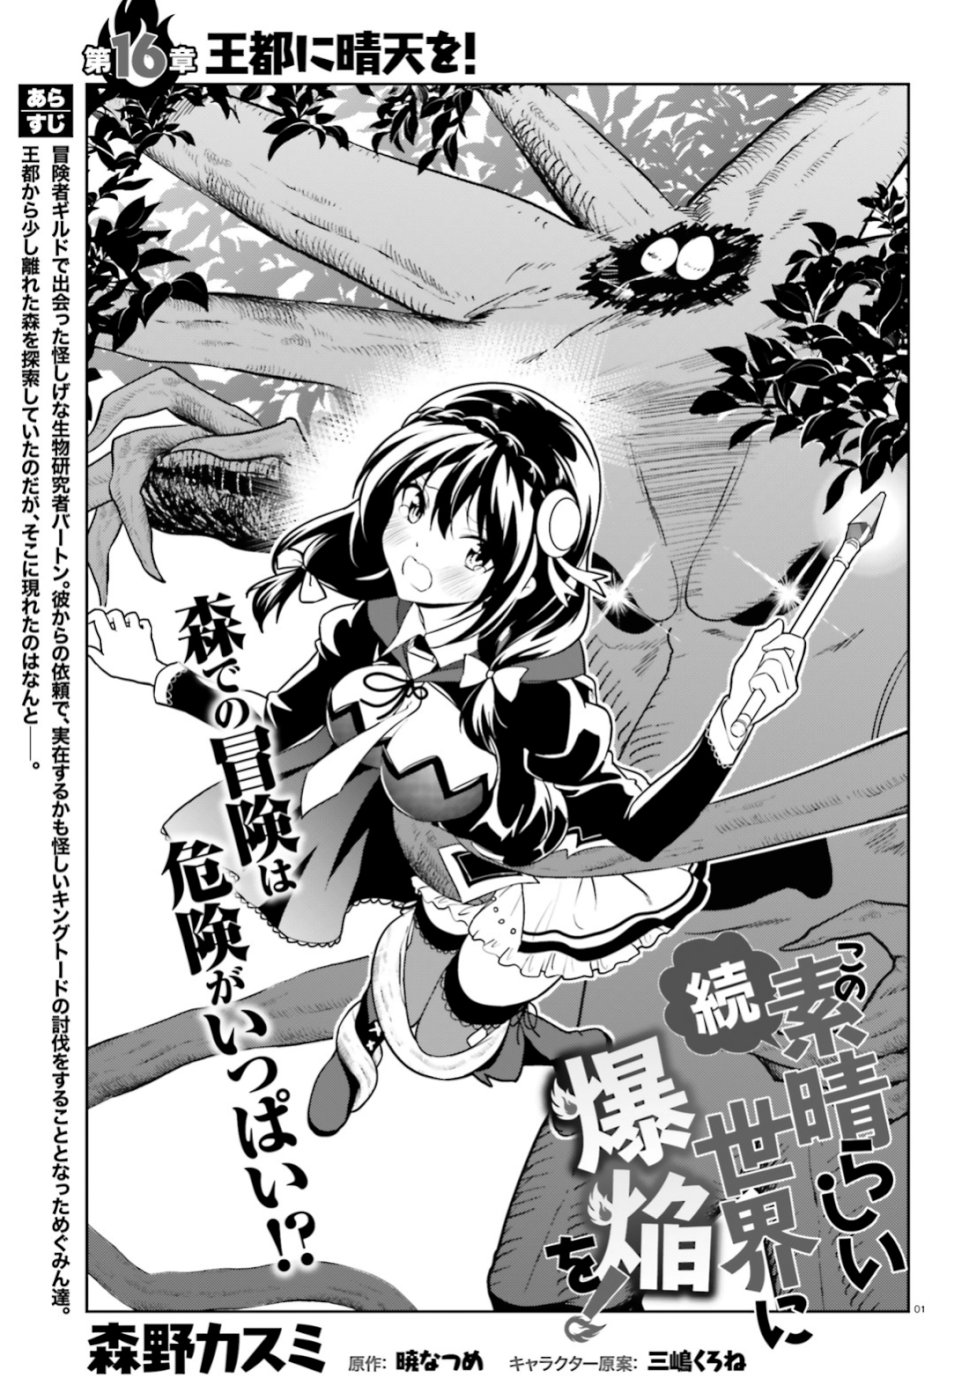 Kono Subarashii Sekai ni Shukufuku wo! - Página 16 - 2016